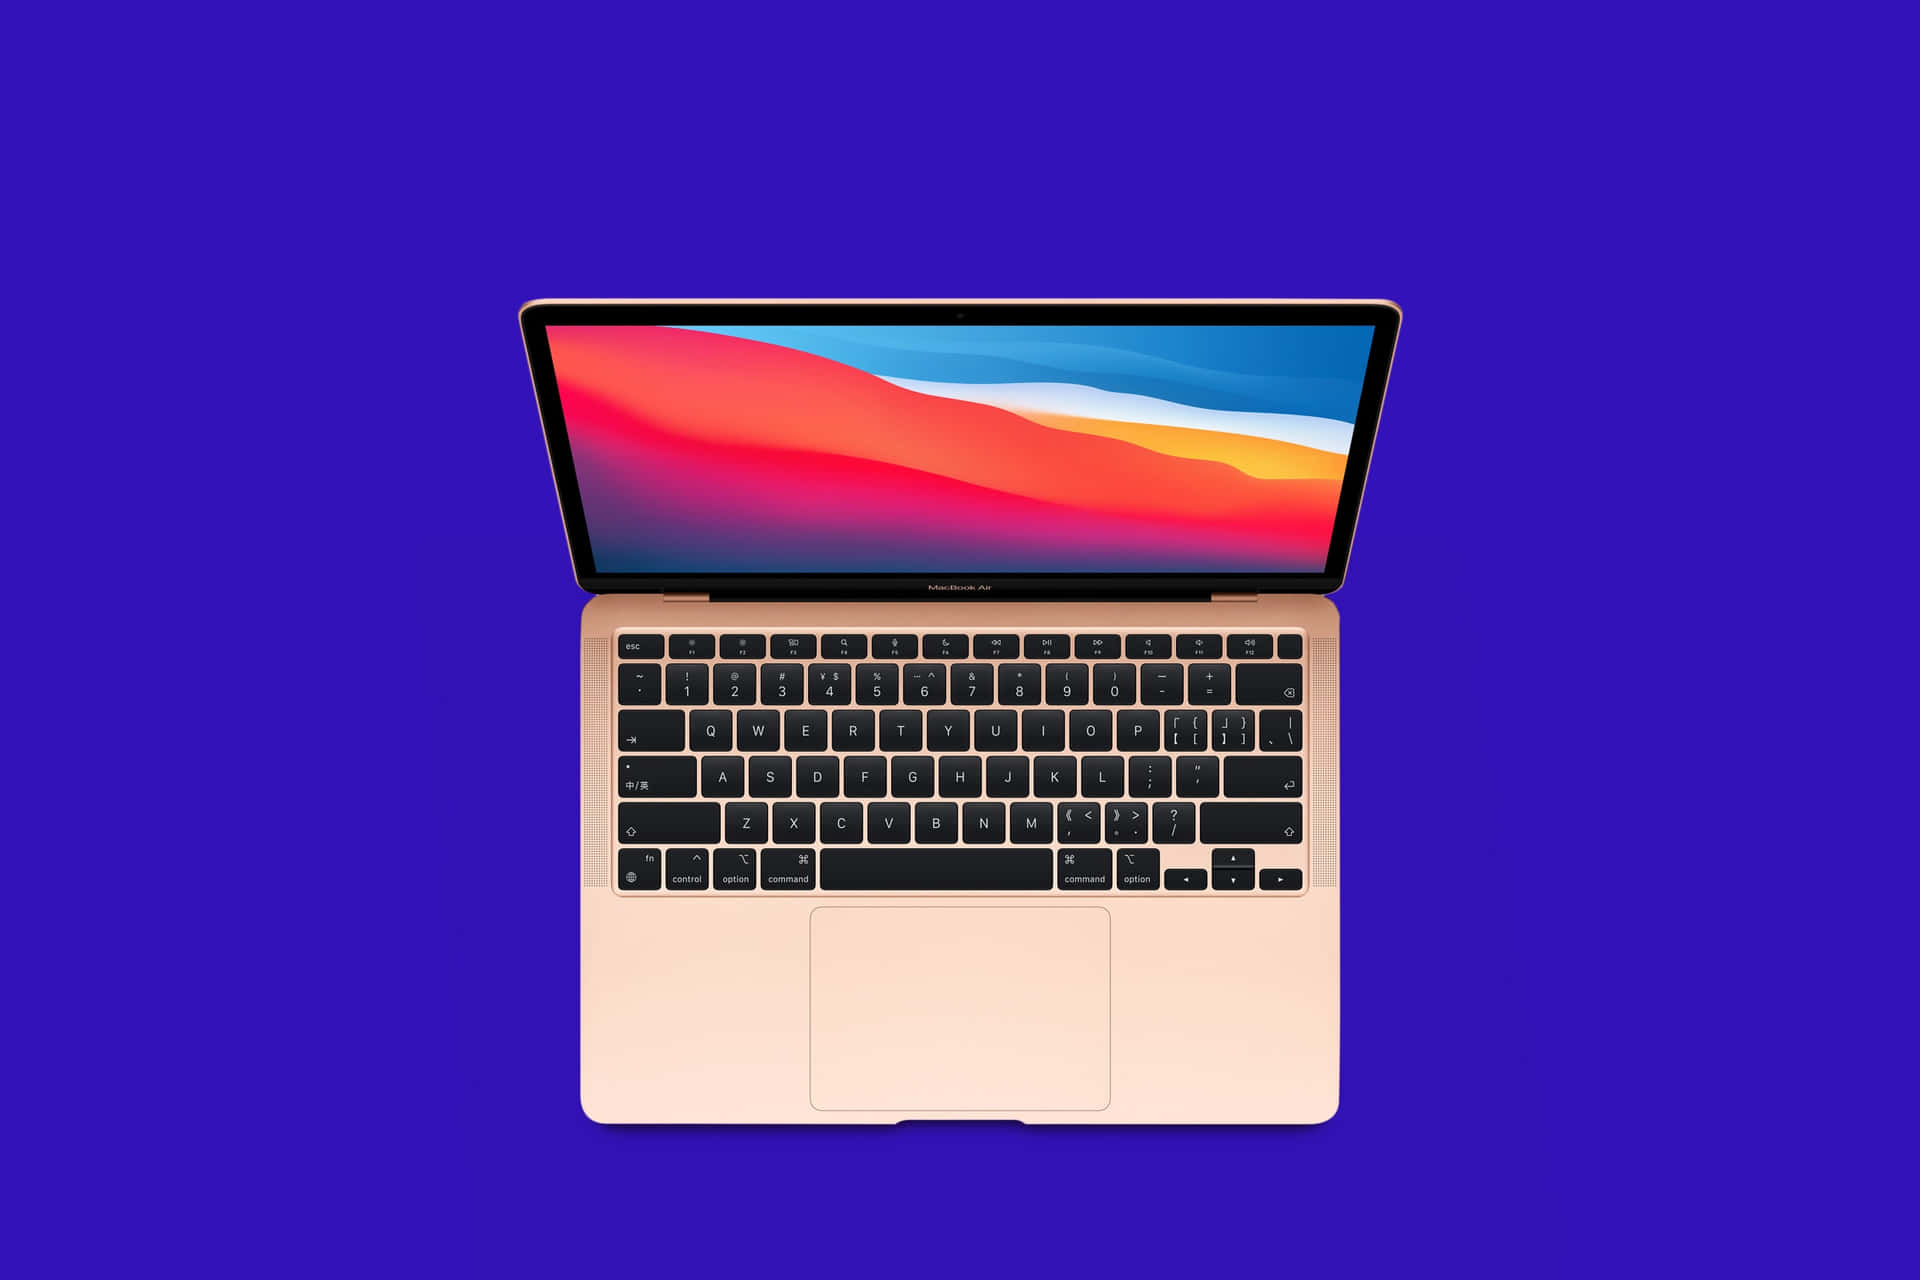 Nimmdeinen Macbook Überallhin Mit